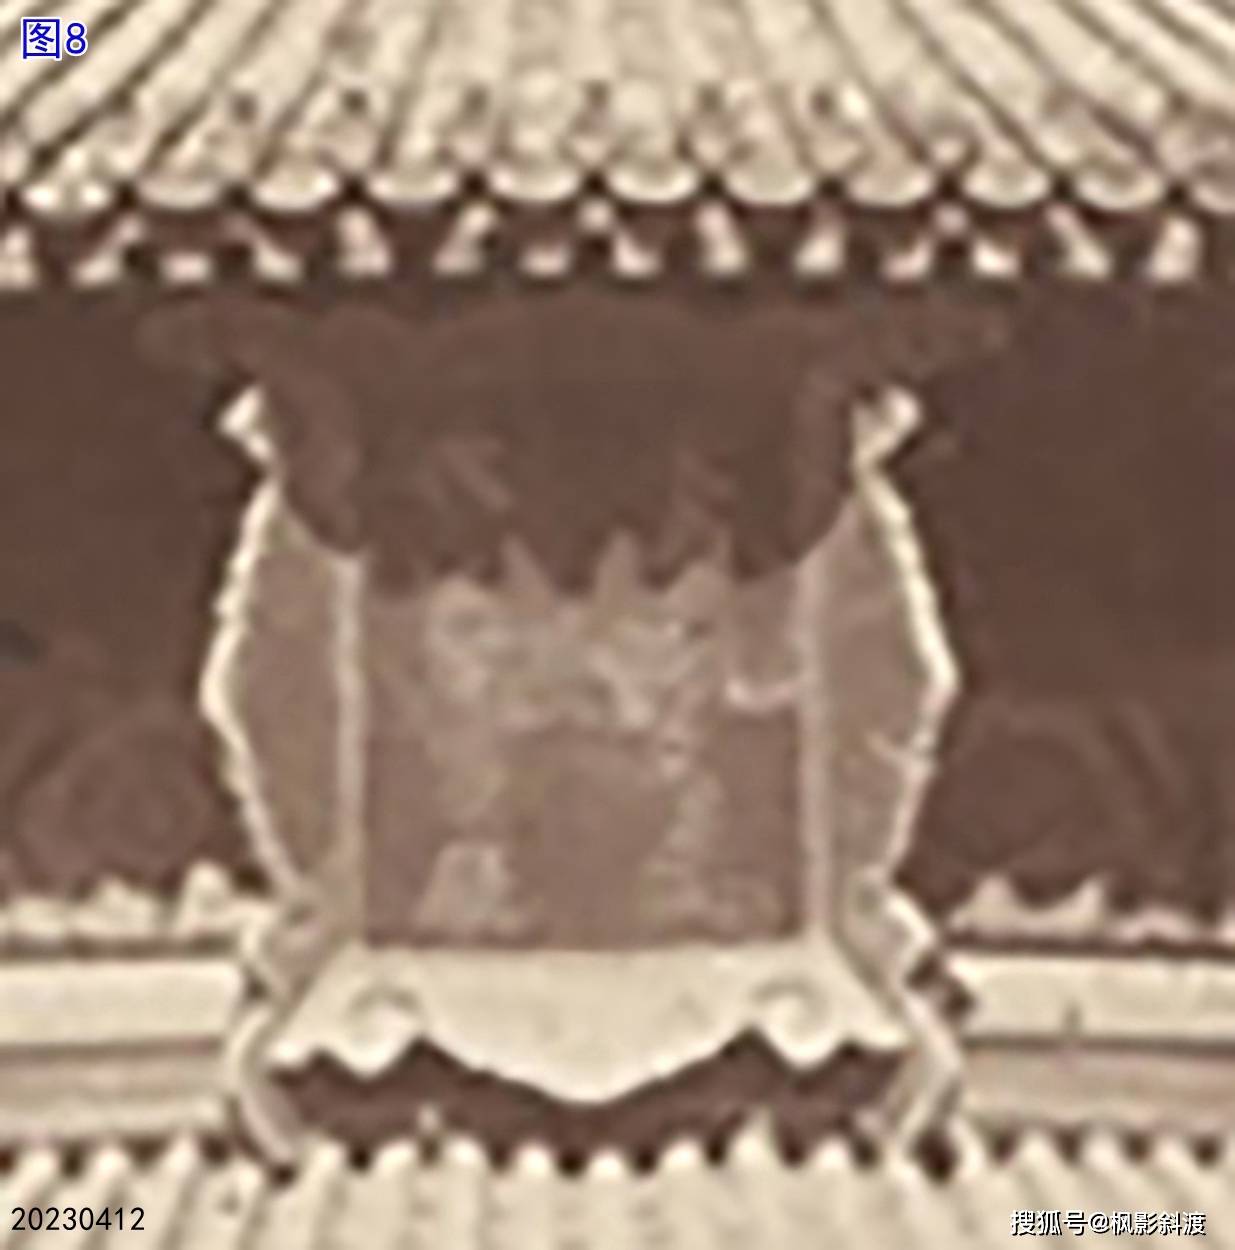 富士苹果竖版照片:北京皇城大光明殿殿名匾上文字的变化-第8张图片-太平洋在线下载